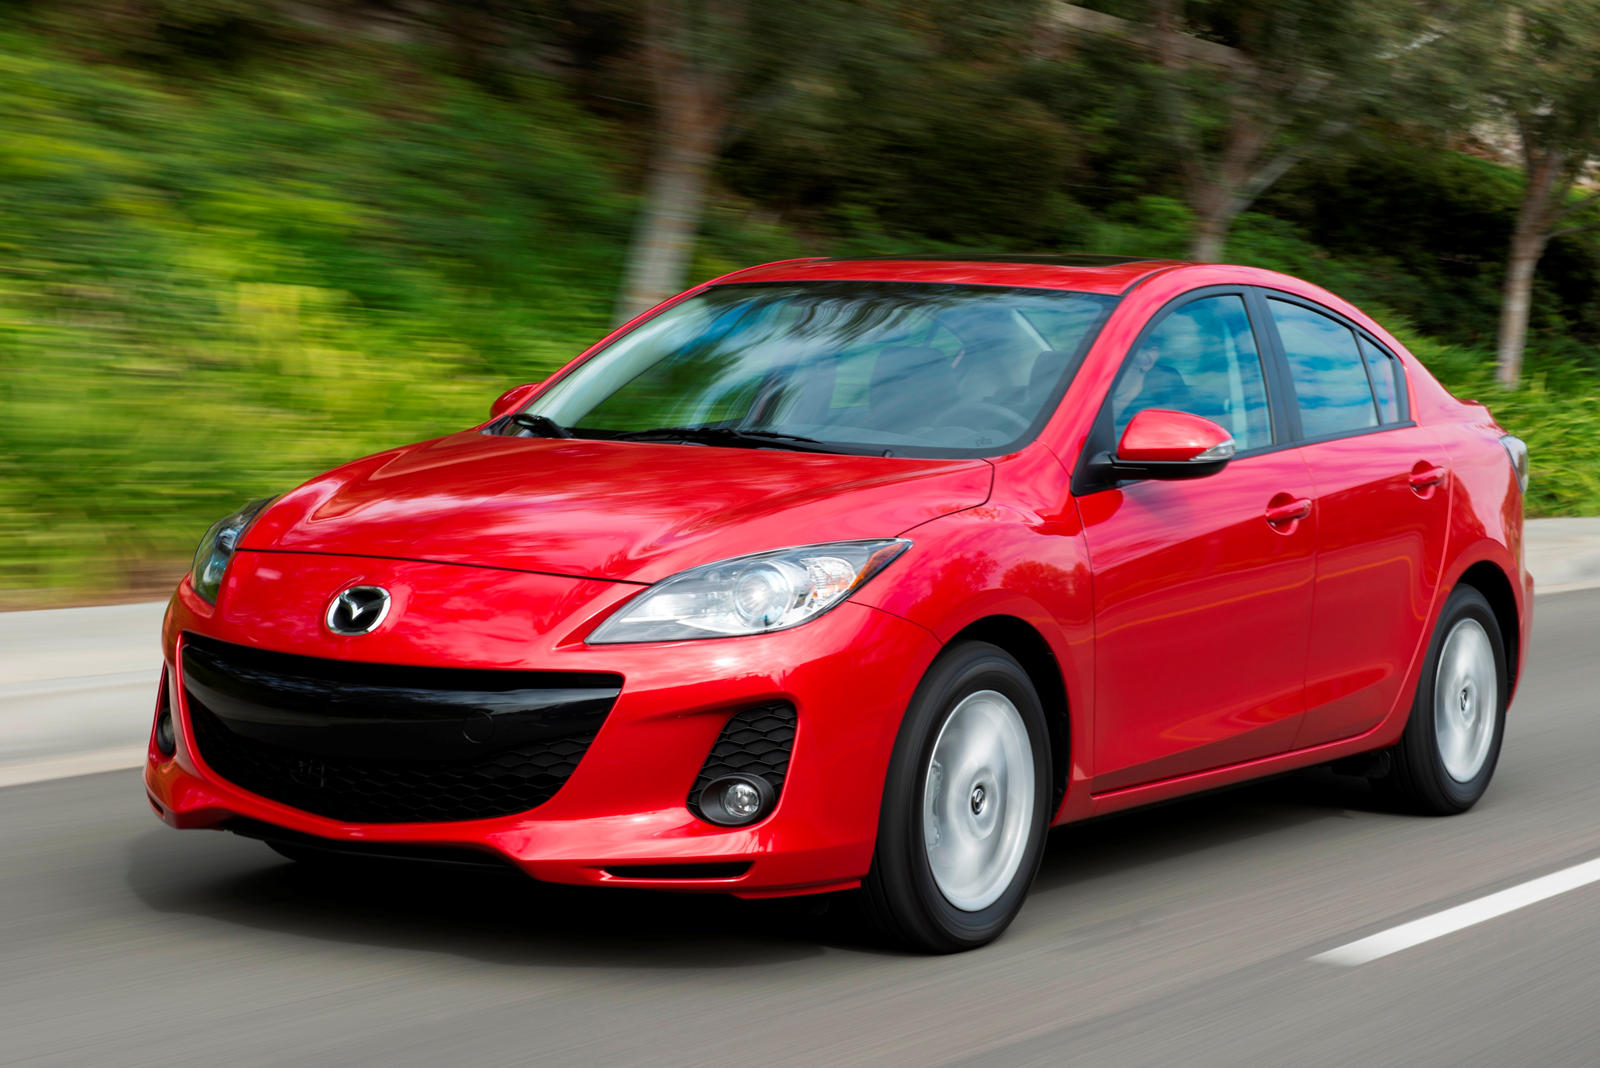 2012 Mazda 3 Sedan: Review, Trims, Specs, Price, New Interior Features ...